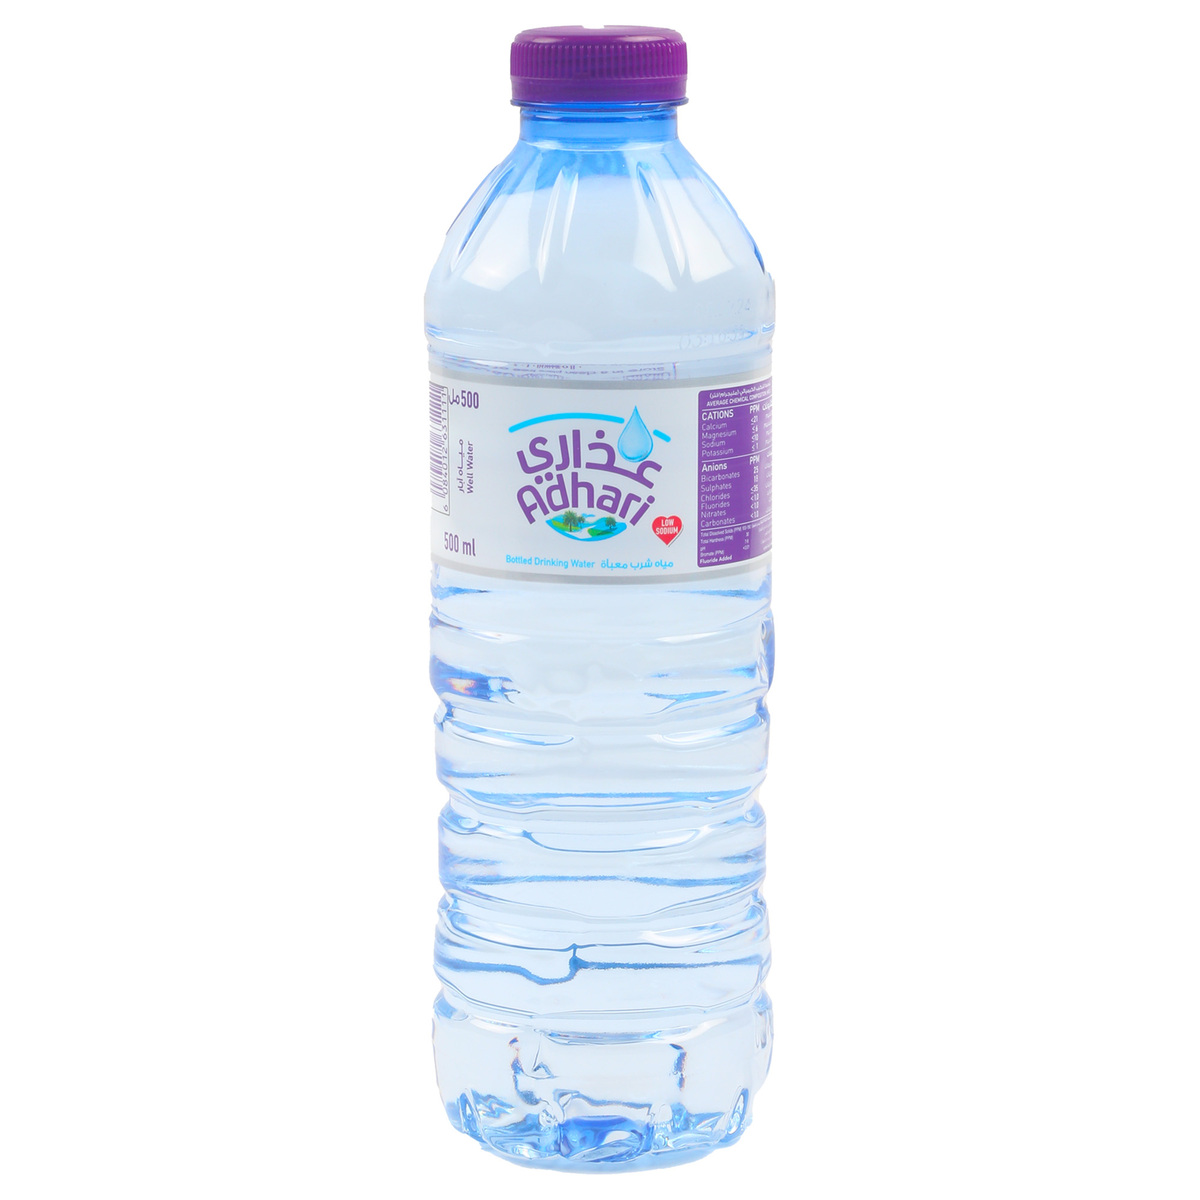 Adhari Drinking Water 12 x 500 ml